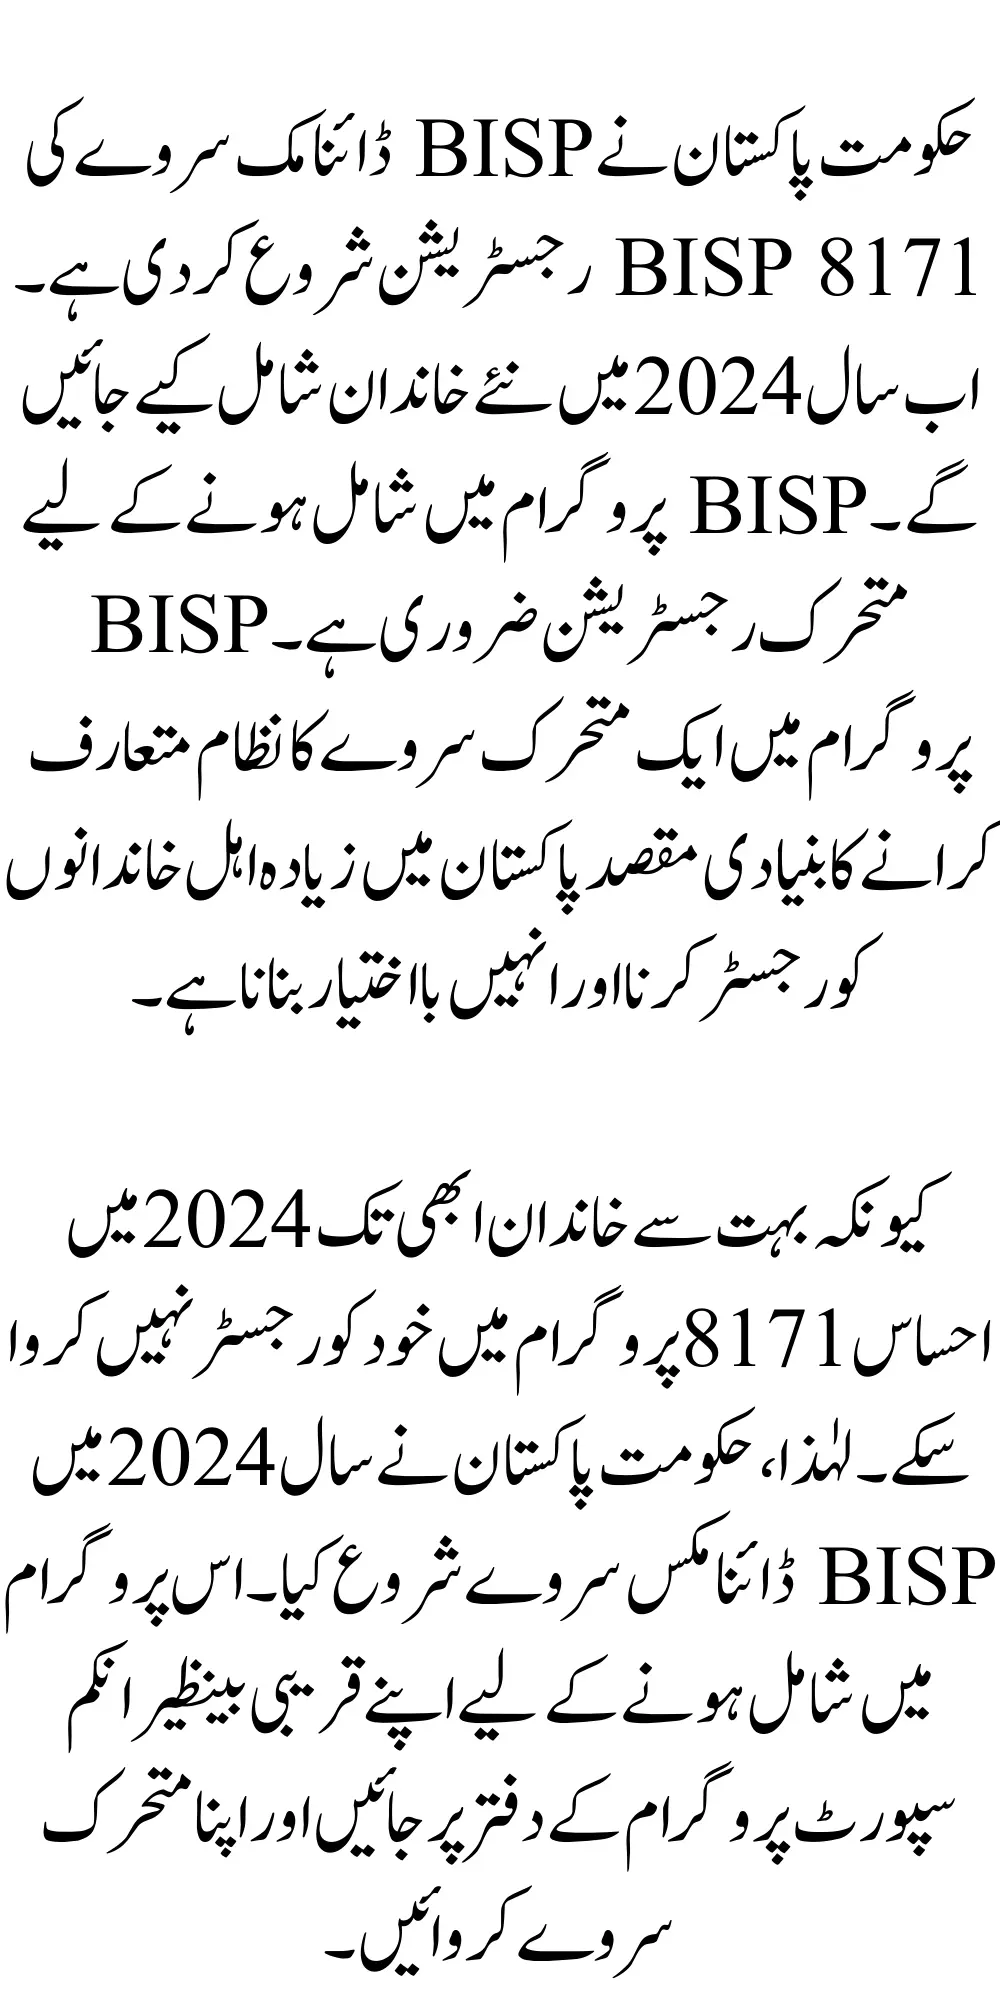 BISP 8171 Registration By Survey Latest Method for 2024